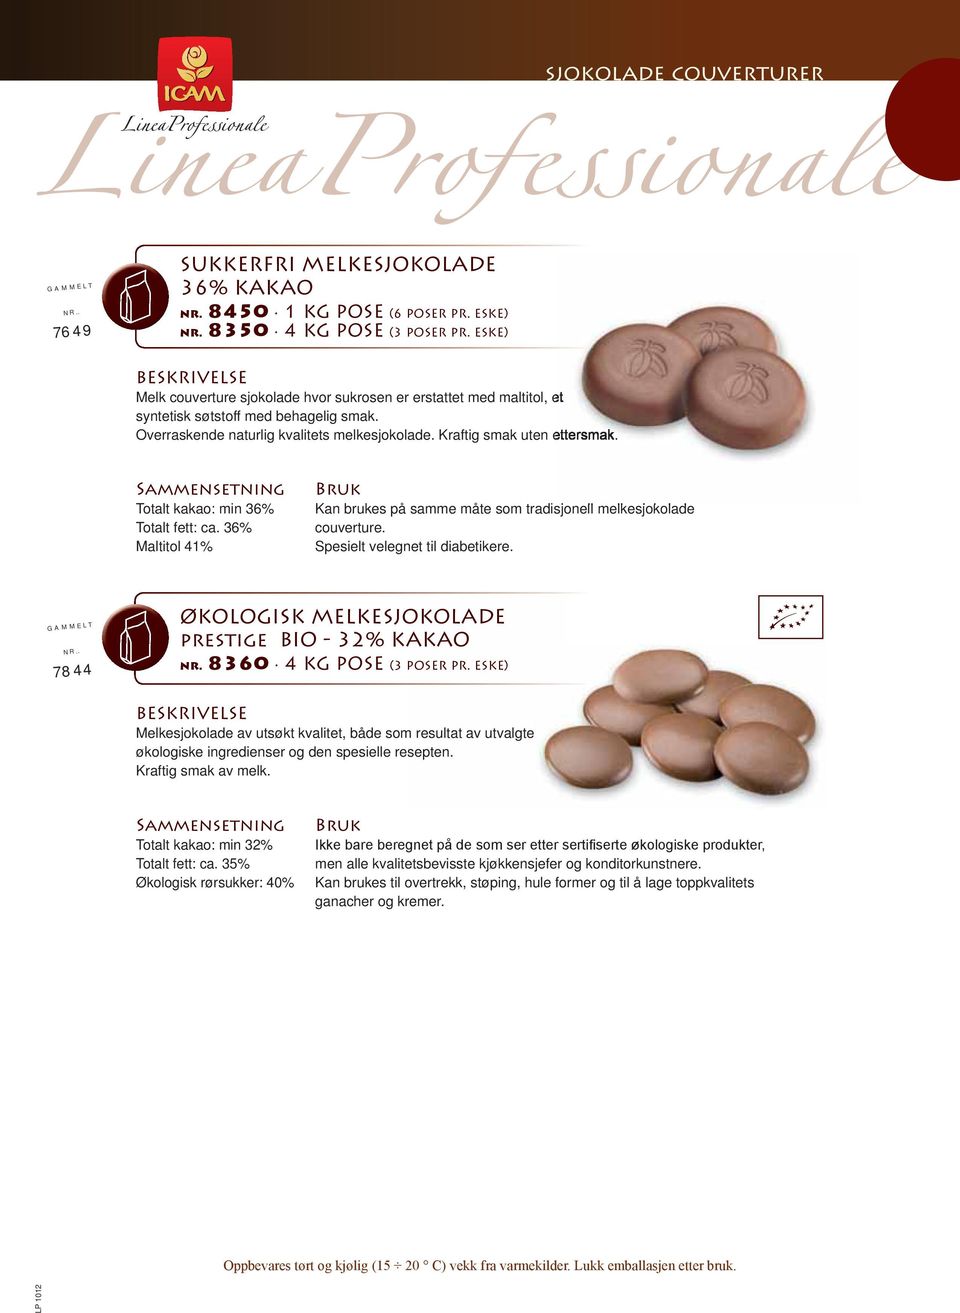 Kraftig smak uten ettersmak. Totalt kakao: min 36% Totalt fett: ca. 36% Maltitol 41% Kan brukes på samme måte som tradisjonell melkesjokolade couverture. Spesielt velegnet til diabetikere. GAMMELT NR.